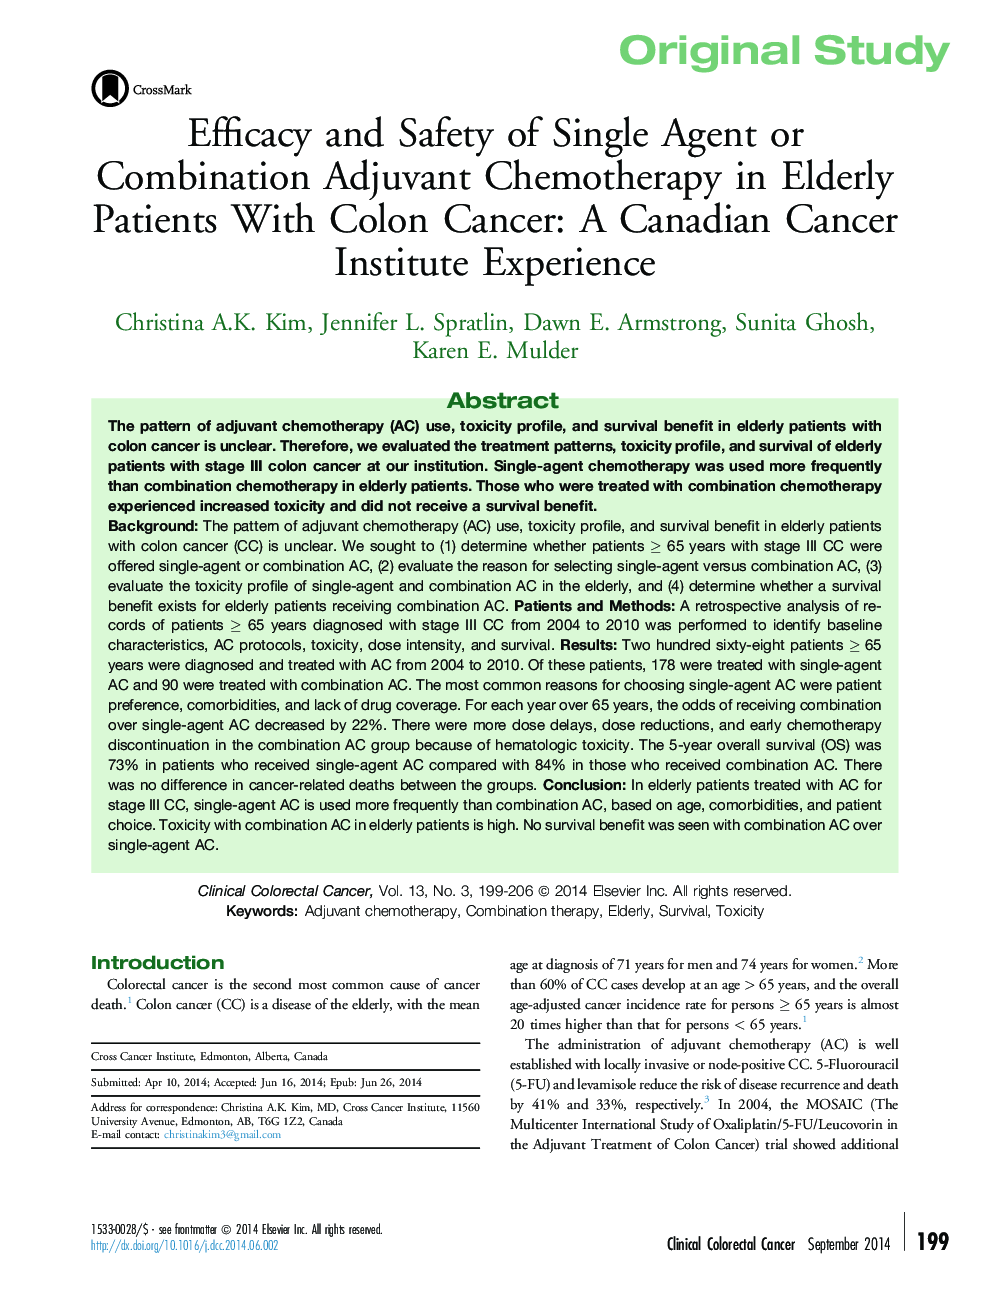 اثربخشی و ایمنی داروهای تک یا شیمیدرمانی ادجوانت ترکیبی در سالمندان مبتلا به سرطان کولون: تجربه موسسه سرطان کانادا 